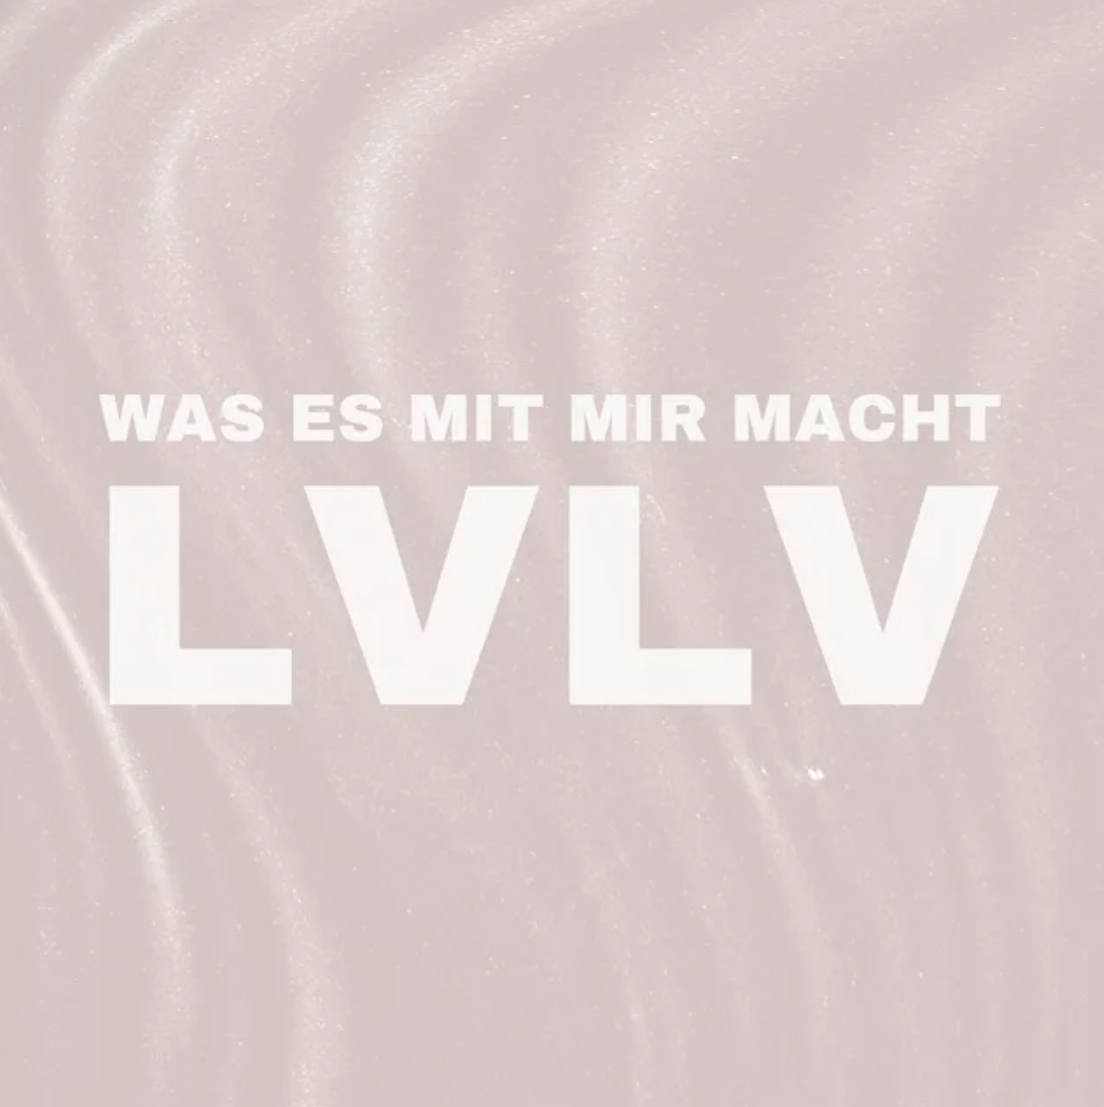 LVLV — Was es mit mir macht cover artwork